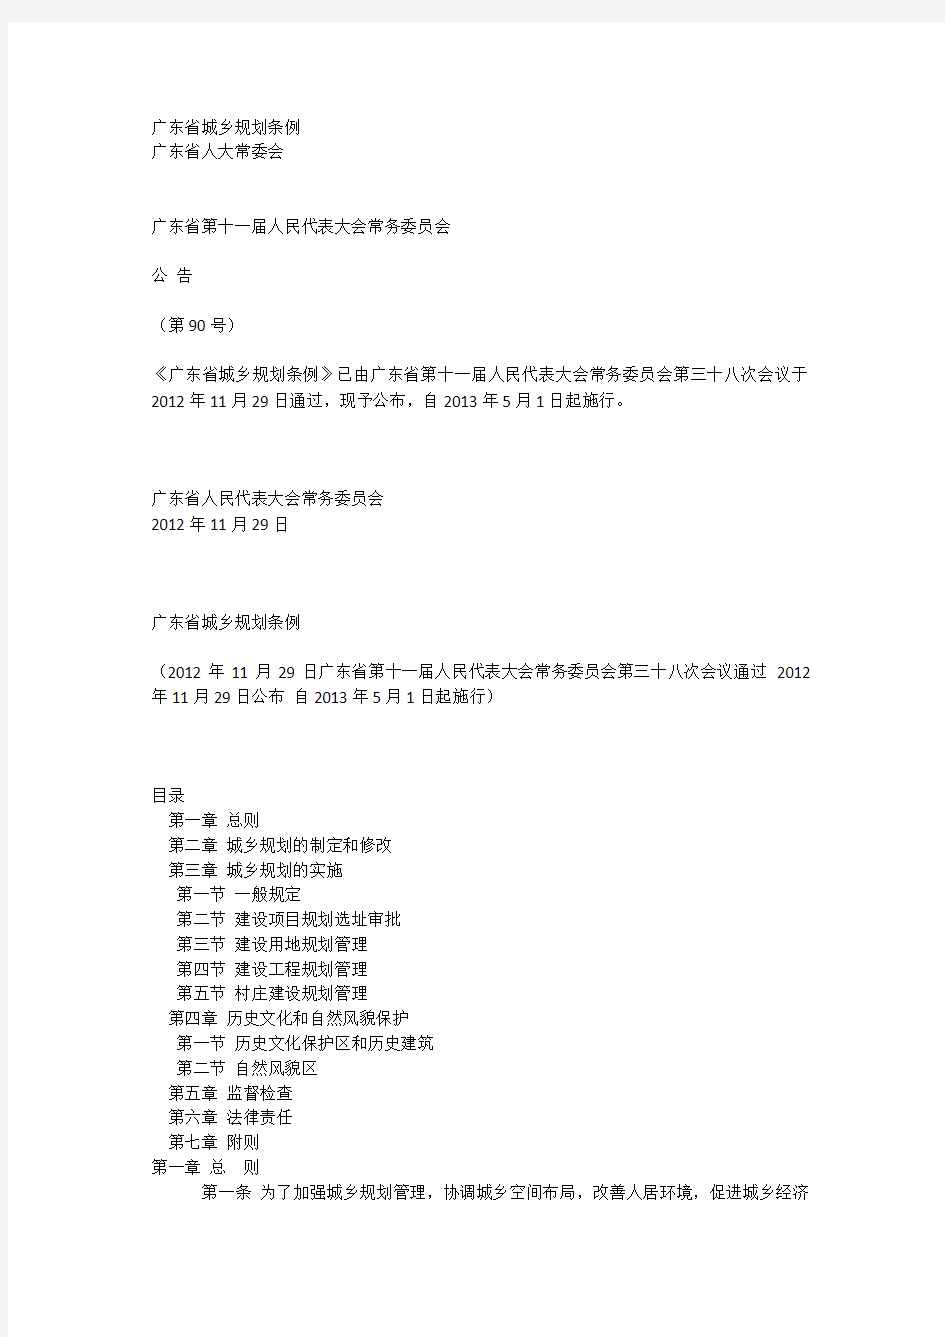 广东省城乡规划条例 2013年5月1日起施行